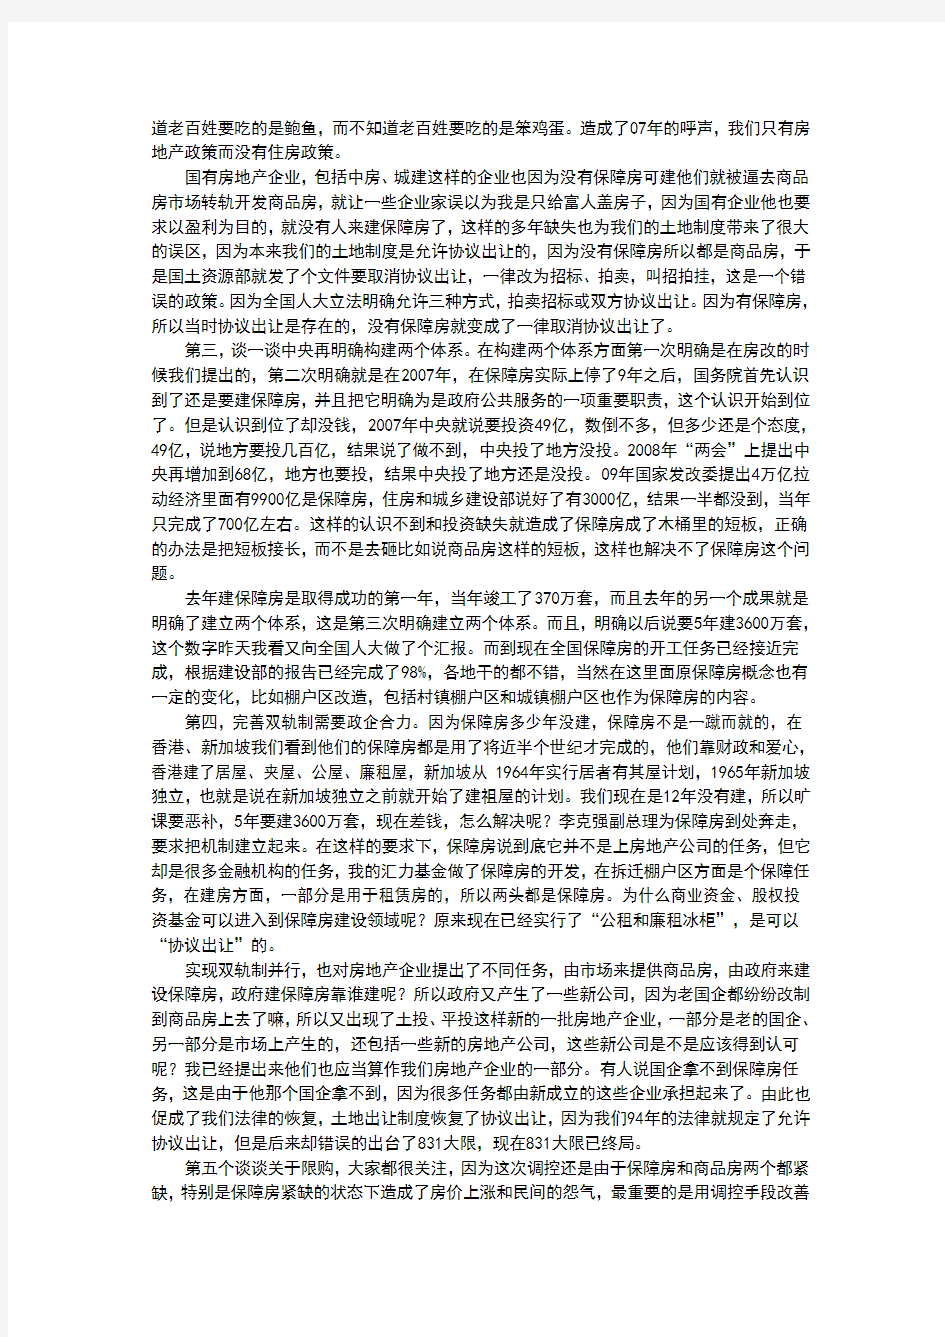 北京大学光华管理学院校友系列论坛——“变局下的房地产”